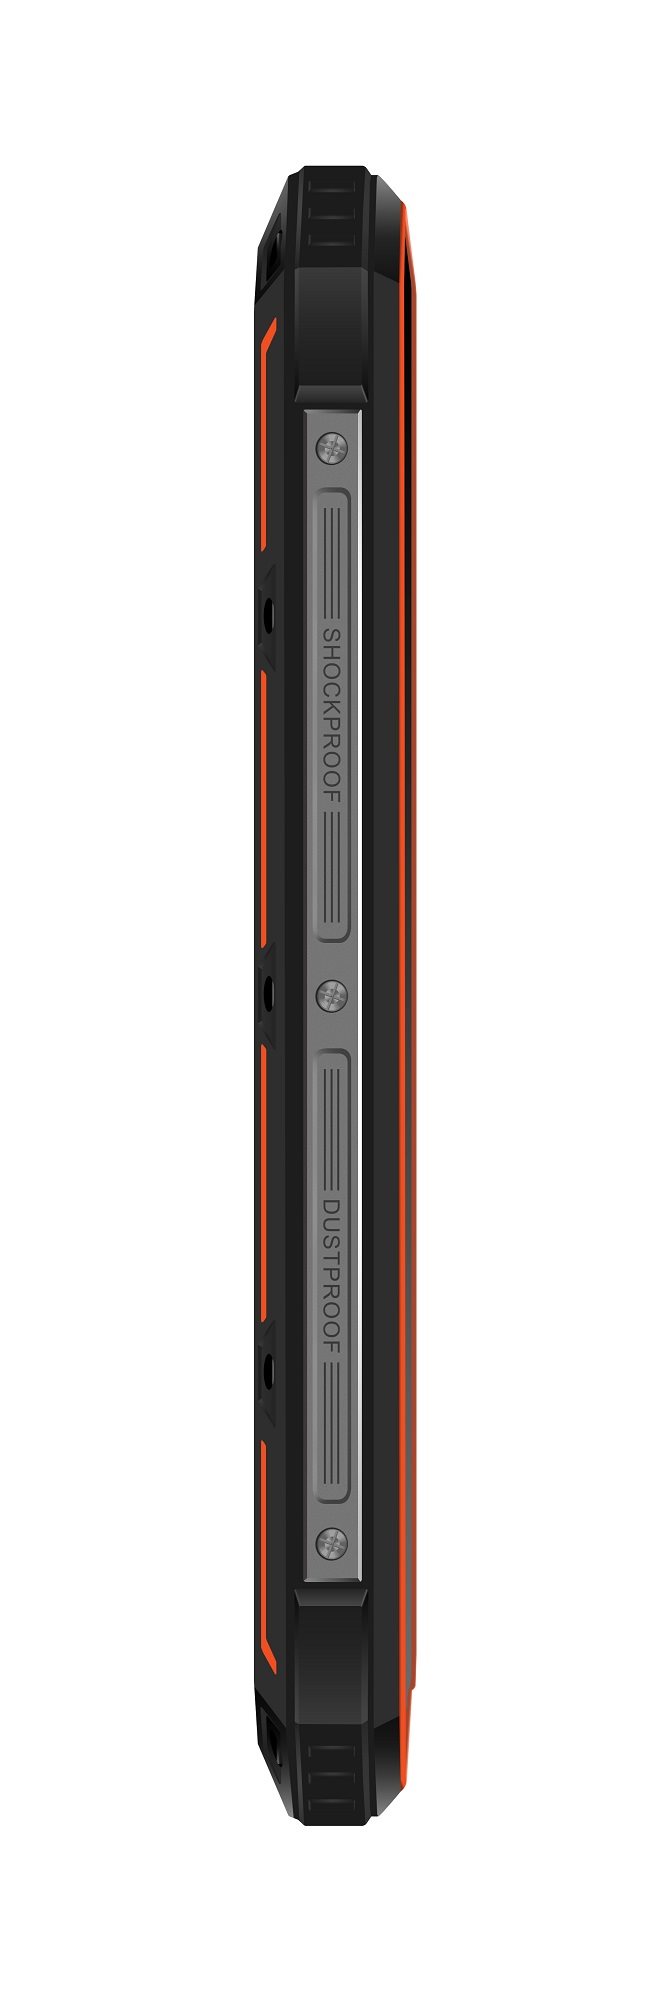 Odolný outdorový telefon iGET BLACKVIEW GBV4000 Orange